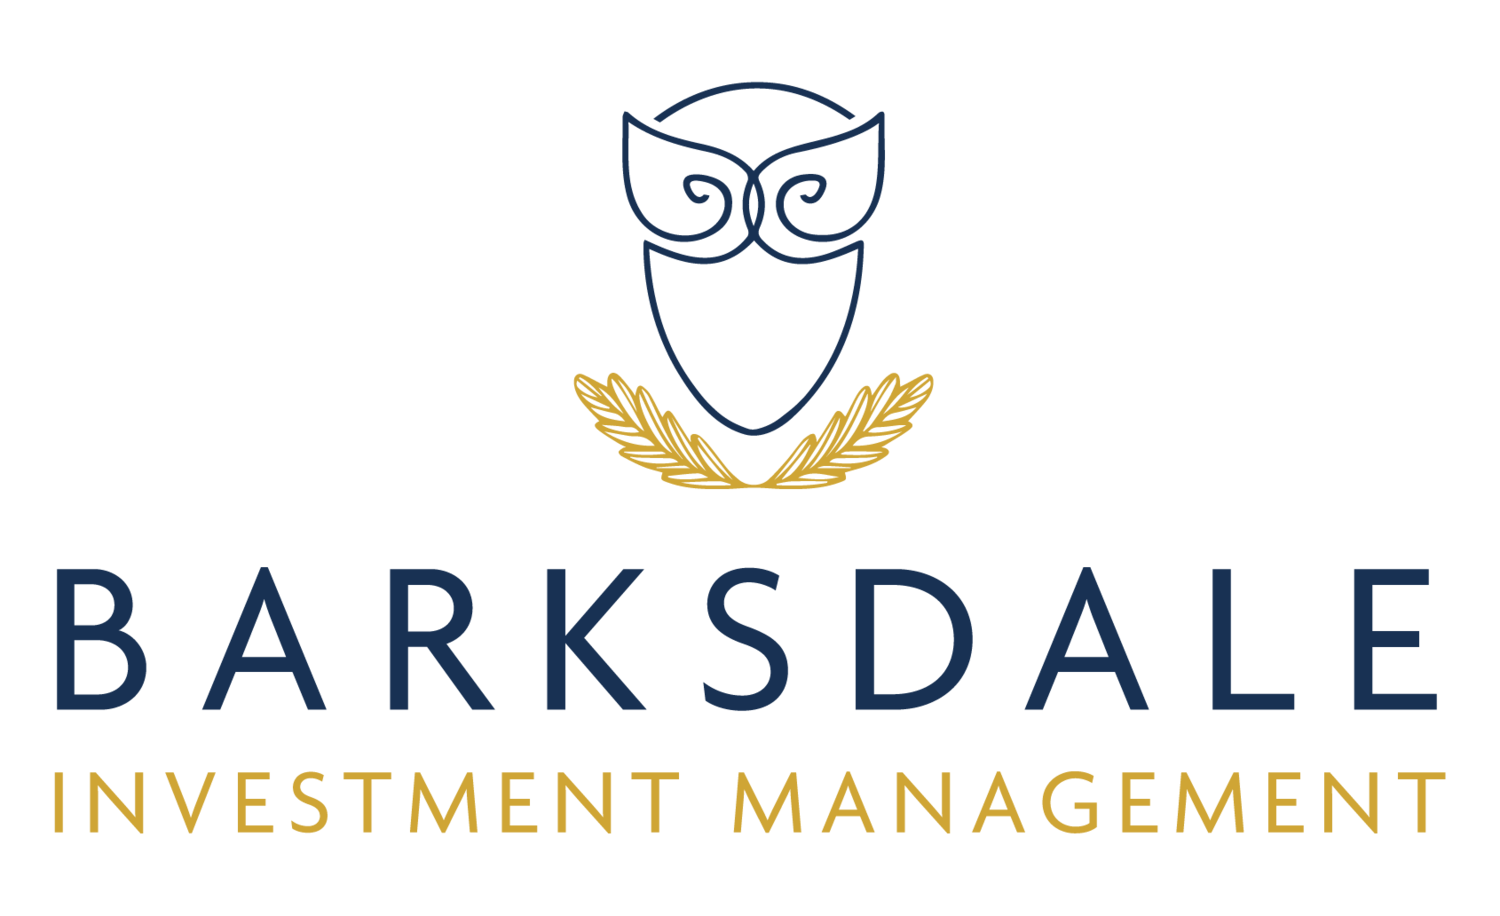 Barksdale Investment Management